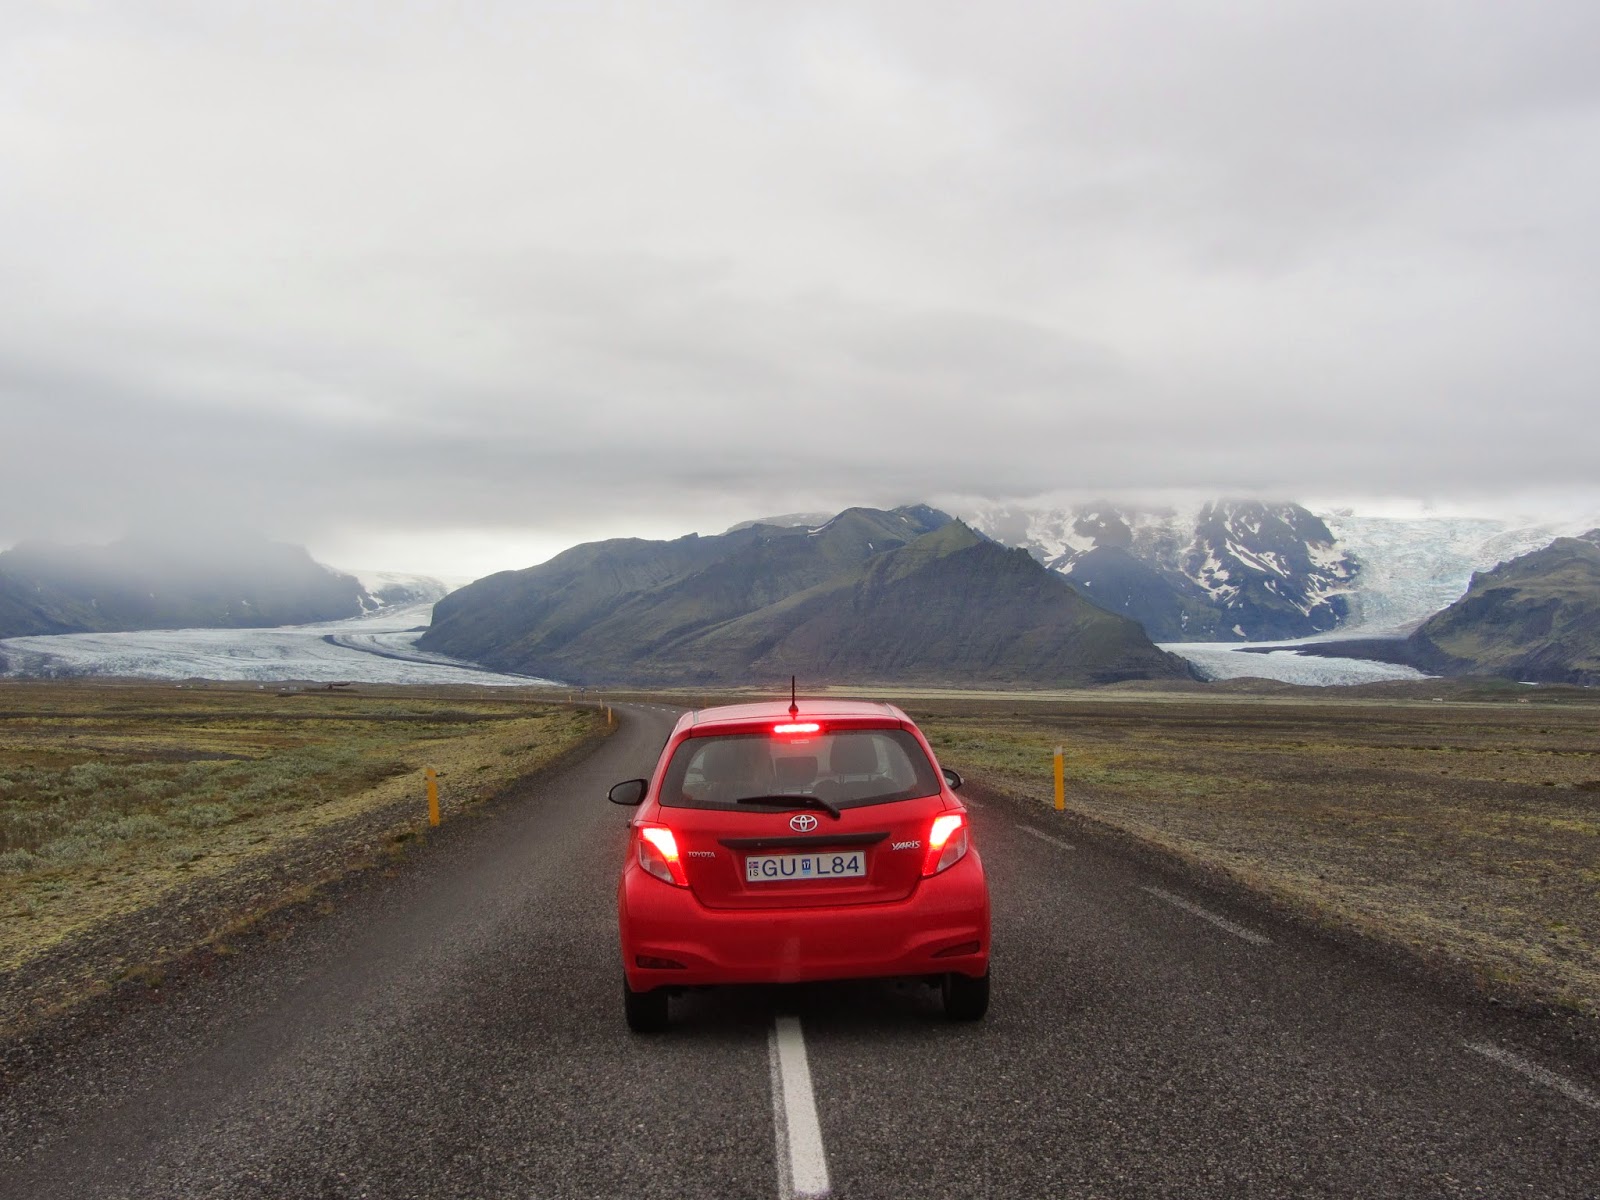 Visitar o SUL DA ISLÂNDIA - De Hvolsvollur a Skaftafell, uma viagem pelo campos de lava e quedas de água | Islândia